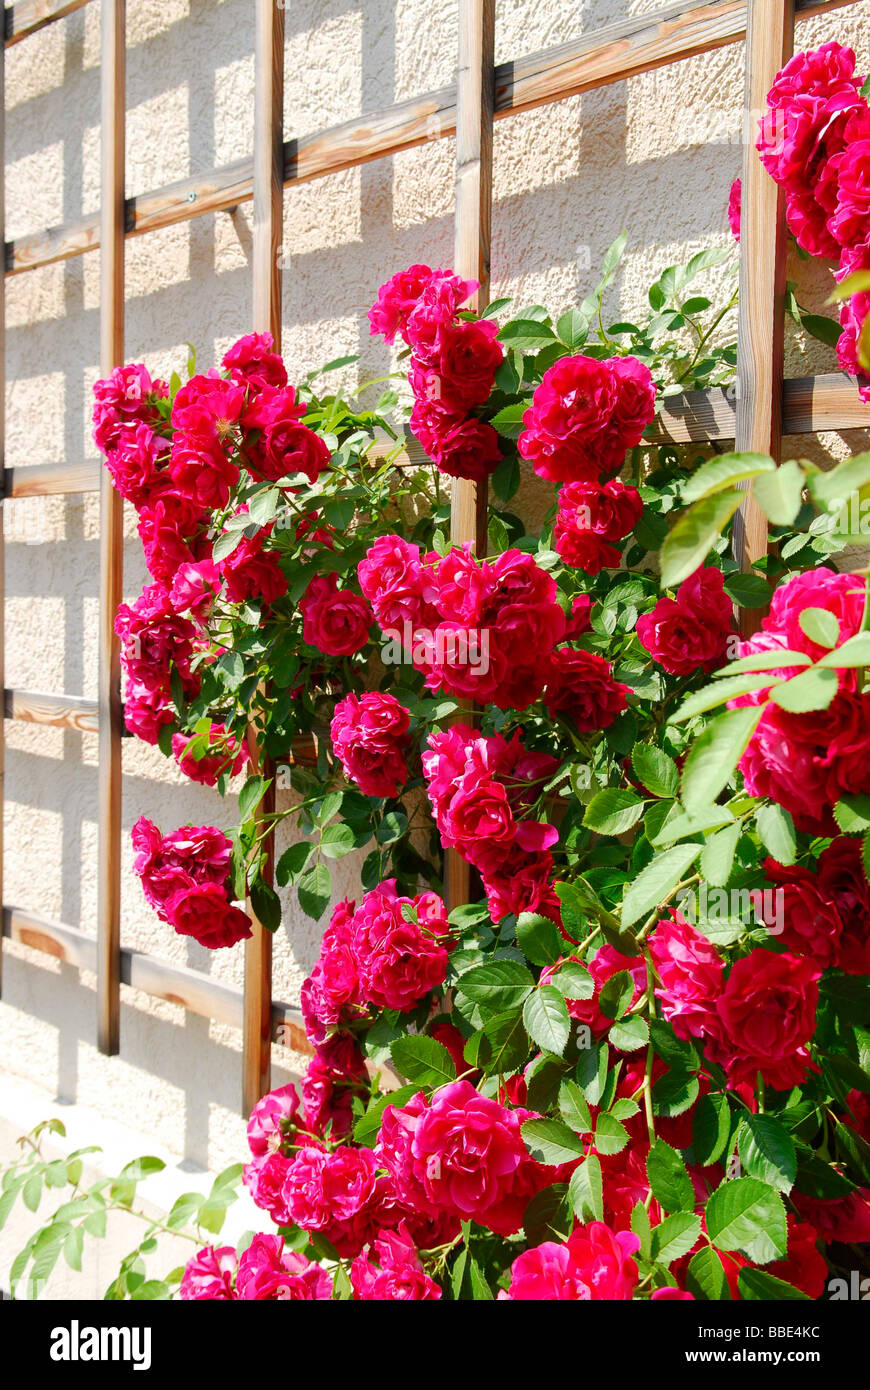 Rot-Rambler-Rosen (Rosa) auf einem Gitter an einer Hauswand Stockfotografie  - Alamy